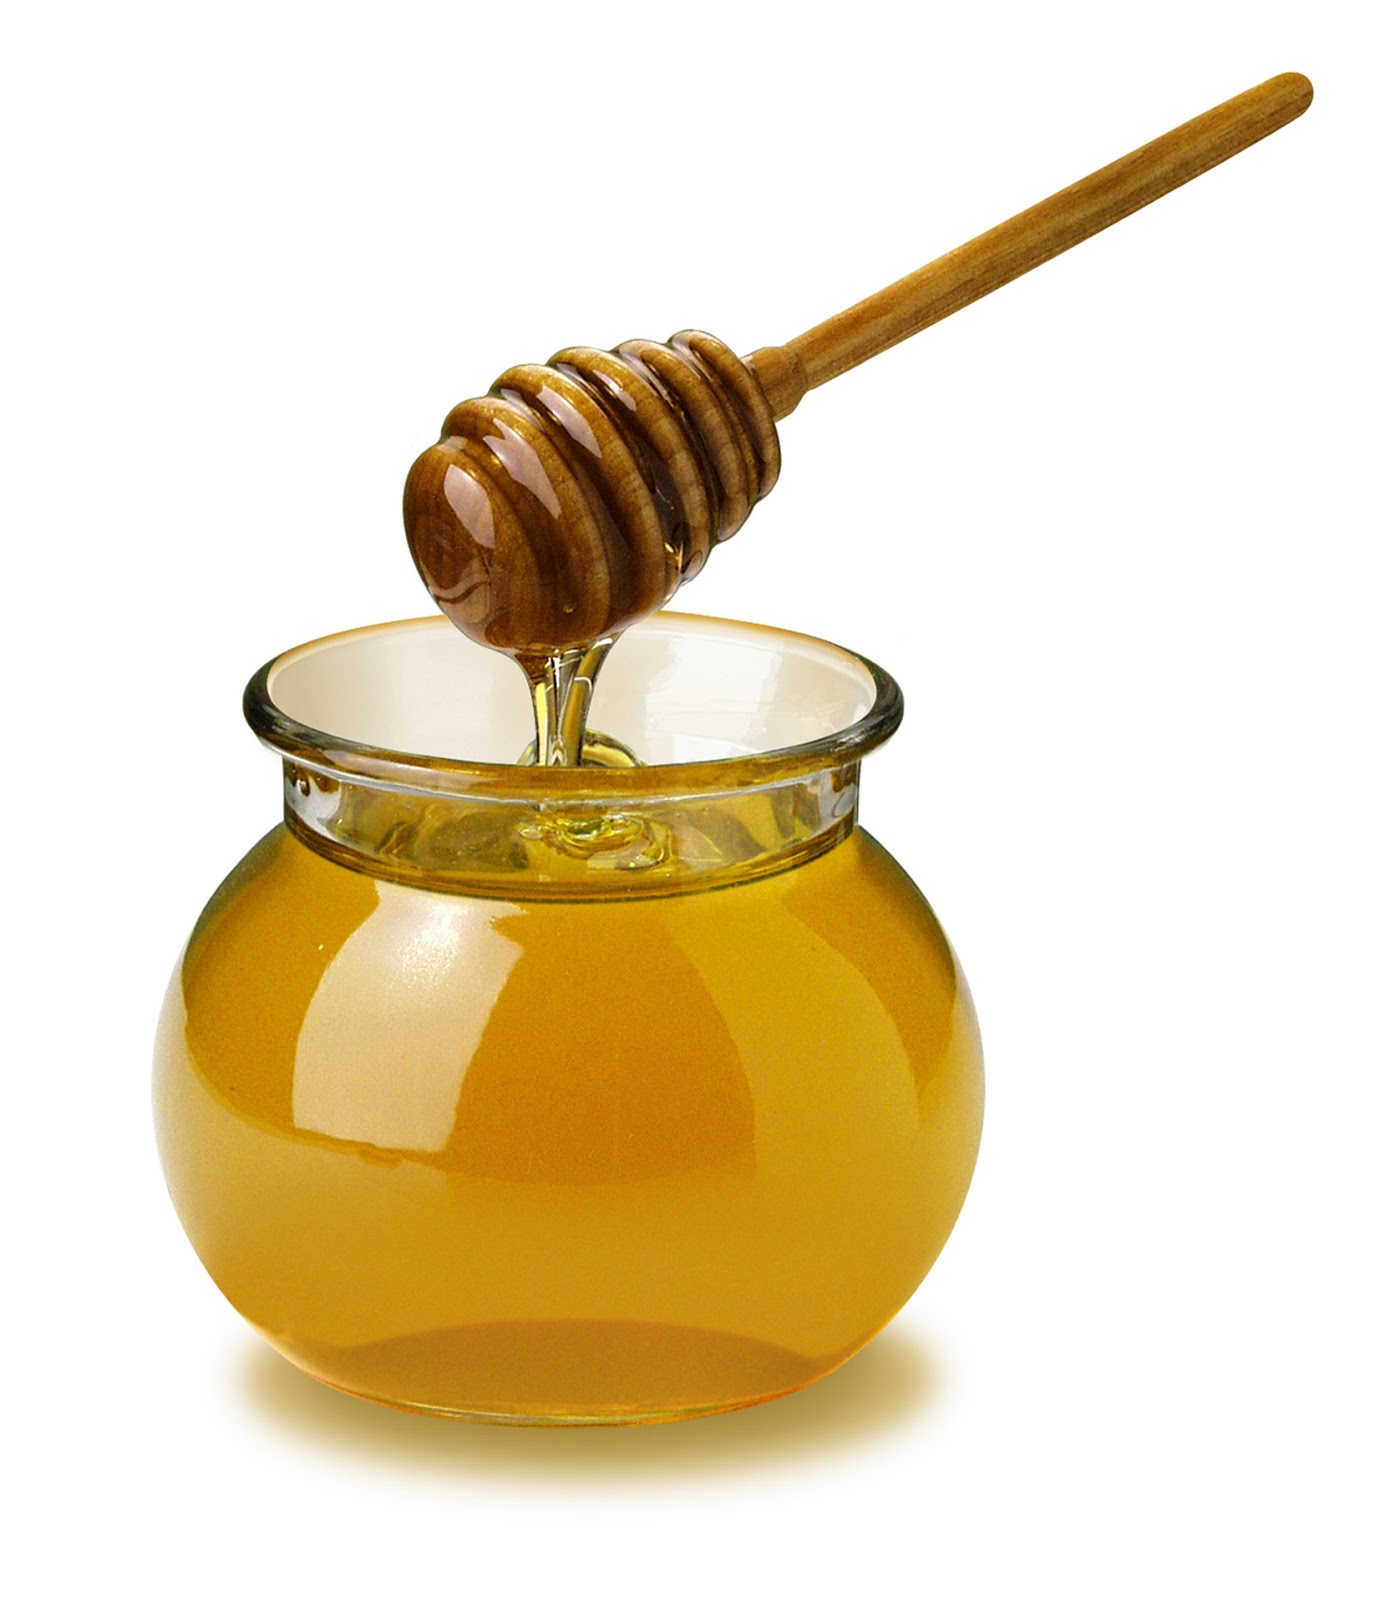 Dieta do mel para vencer a compulsão por doces